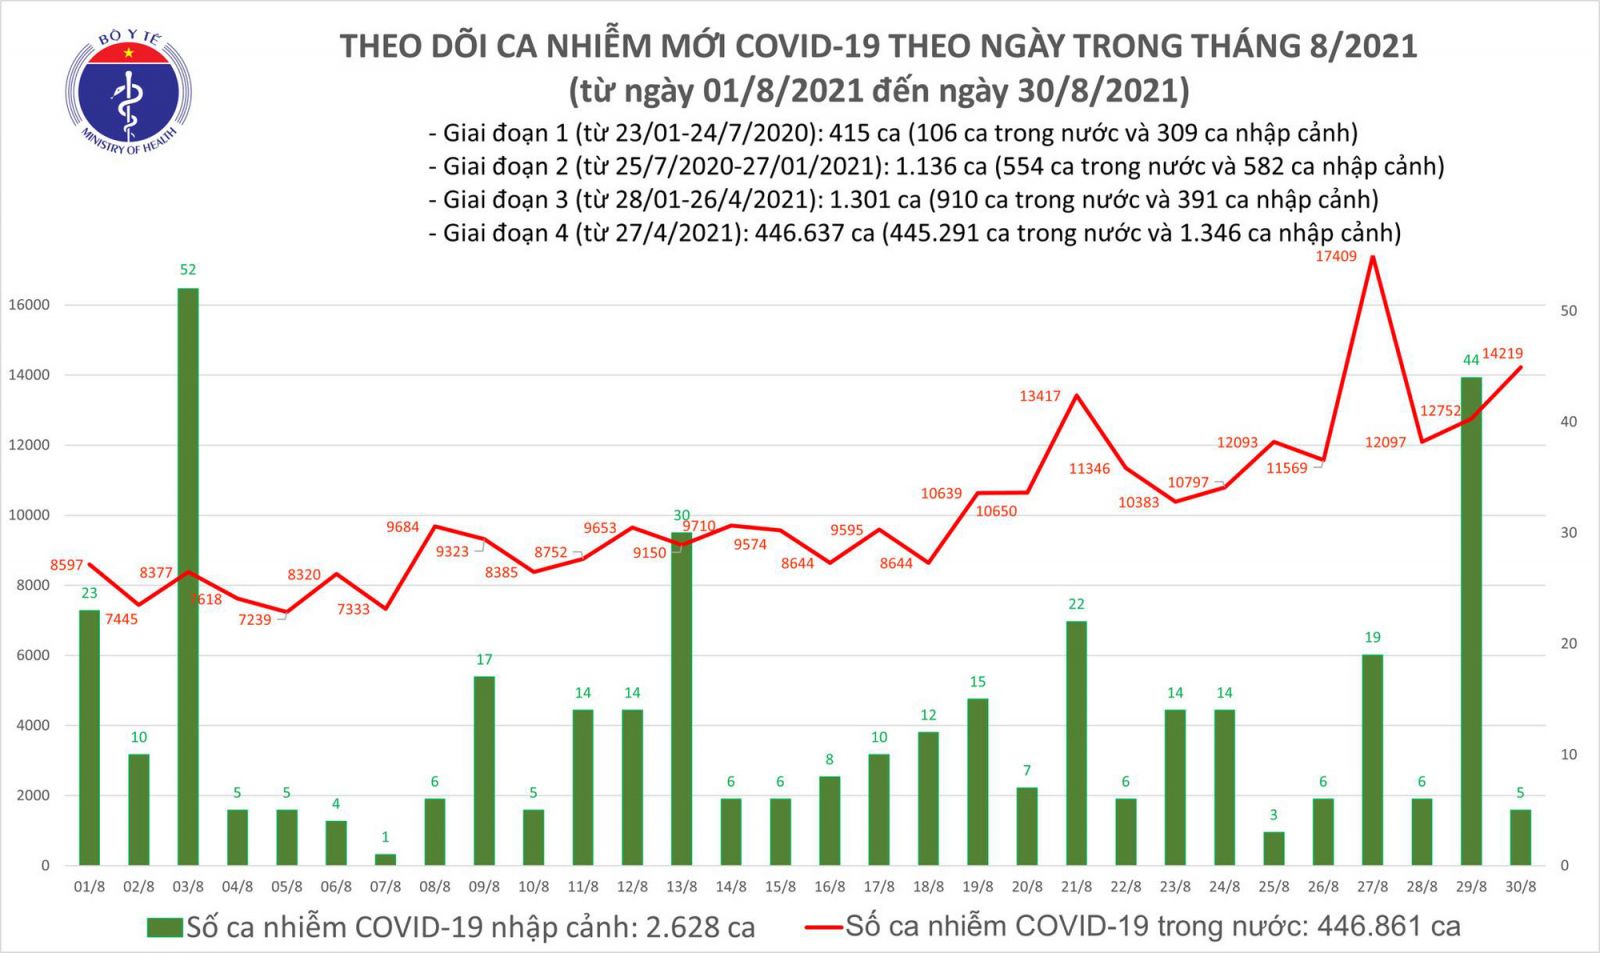 Tối 30/8: Thêm 14.224 ca mắc COVID-19, tăng 1.467 ca so với hôm qua